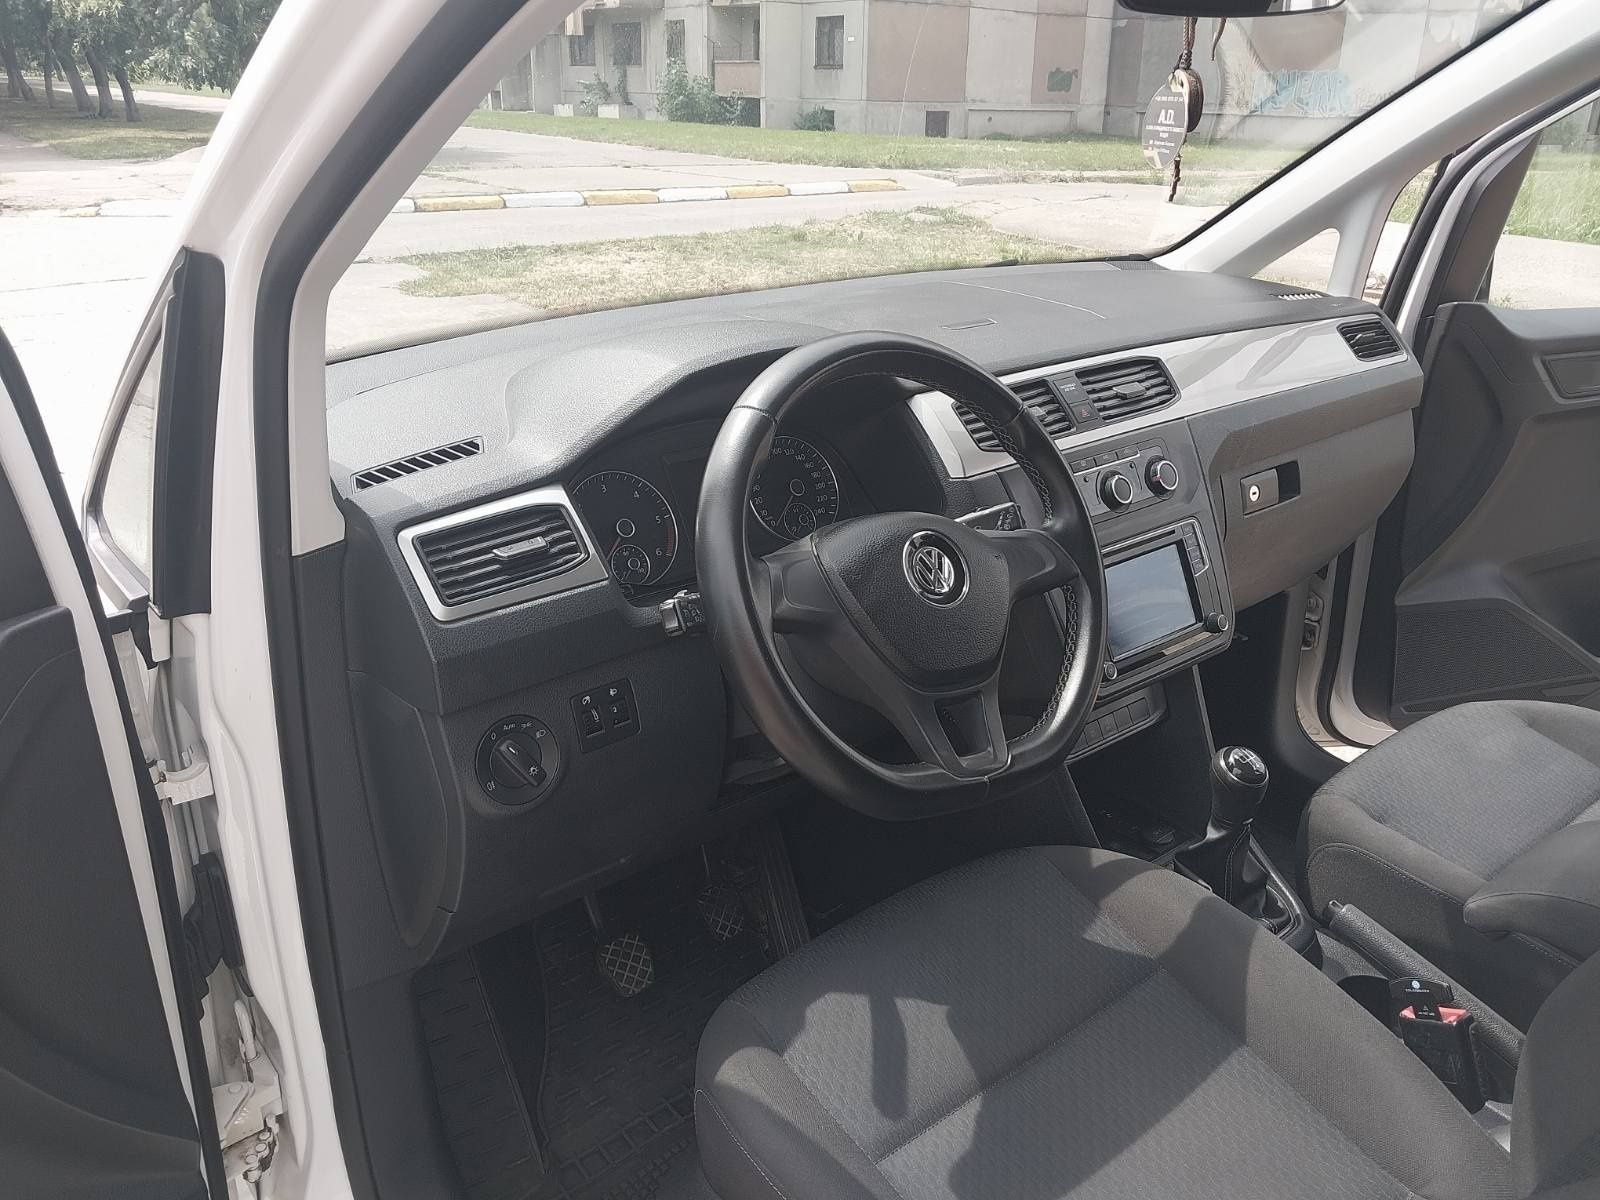 VW Caddy пасажир, 2.0 дизель, 2015 г. (ІІІ поколение)